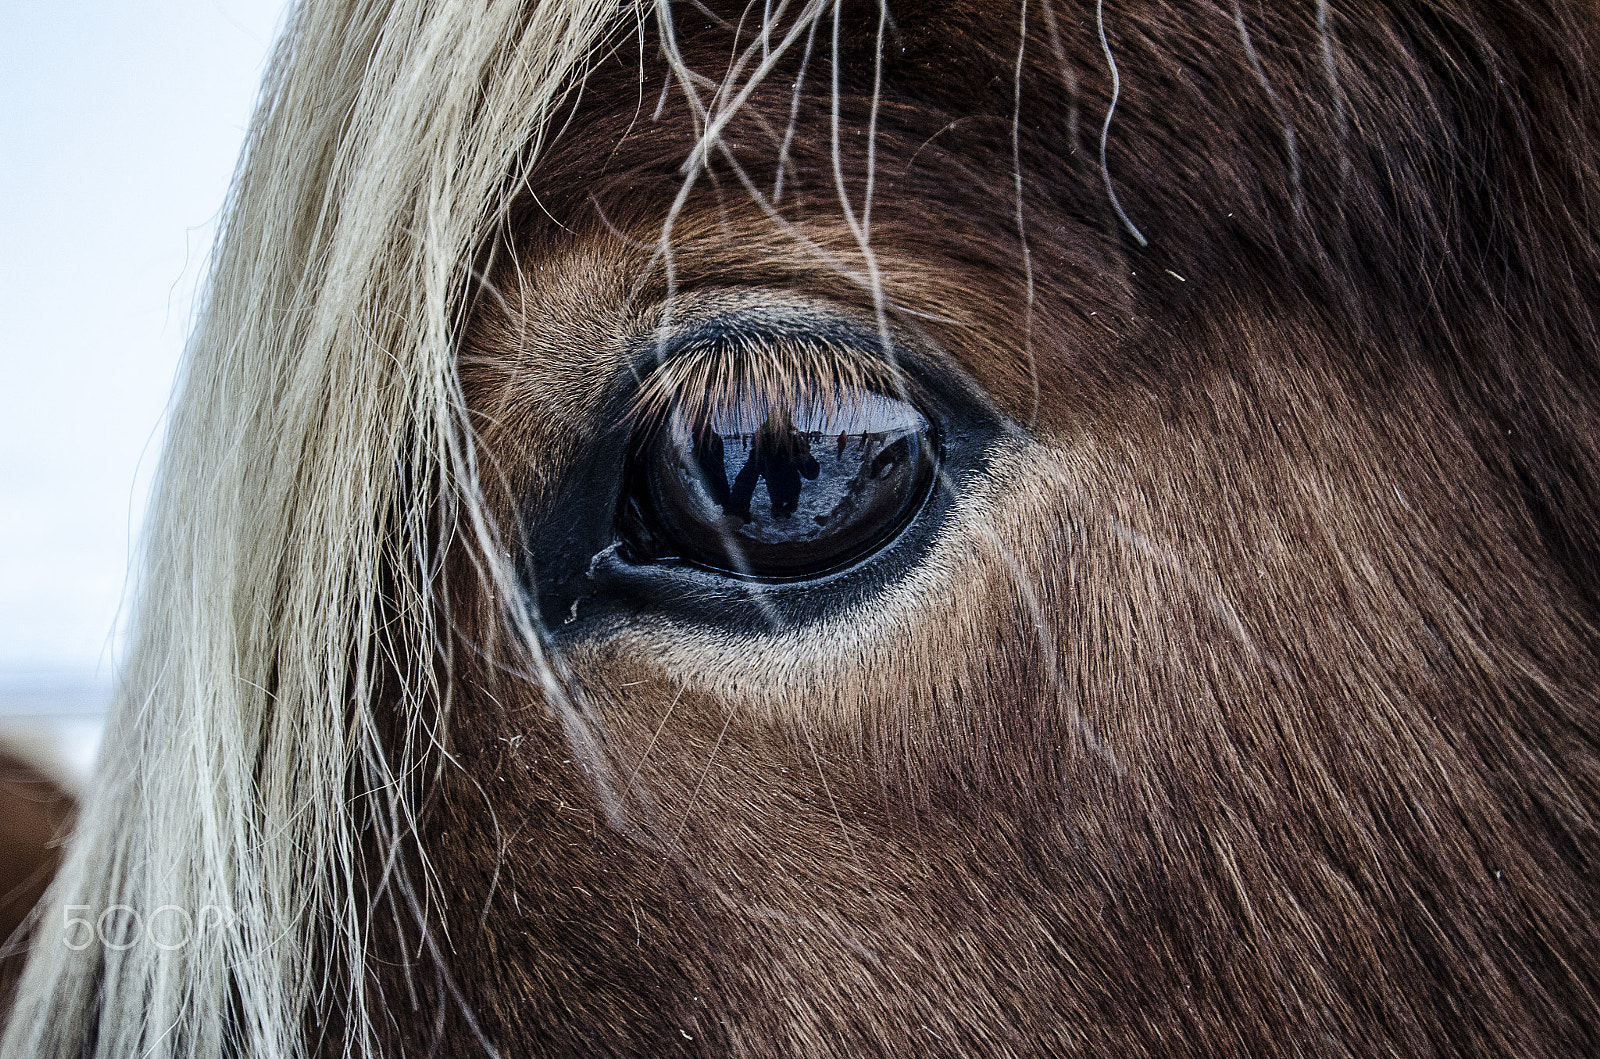 Nikon D7000 sample photo. A horse portrait photography